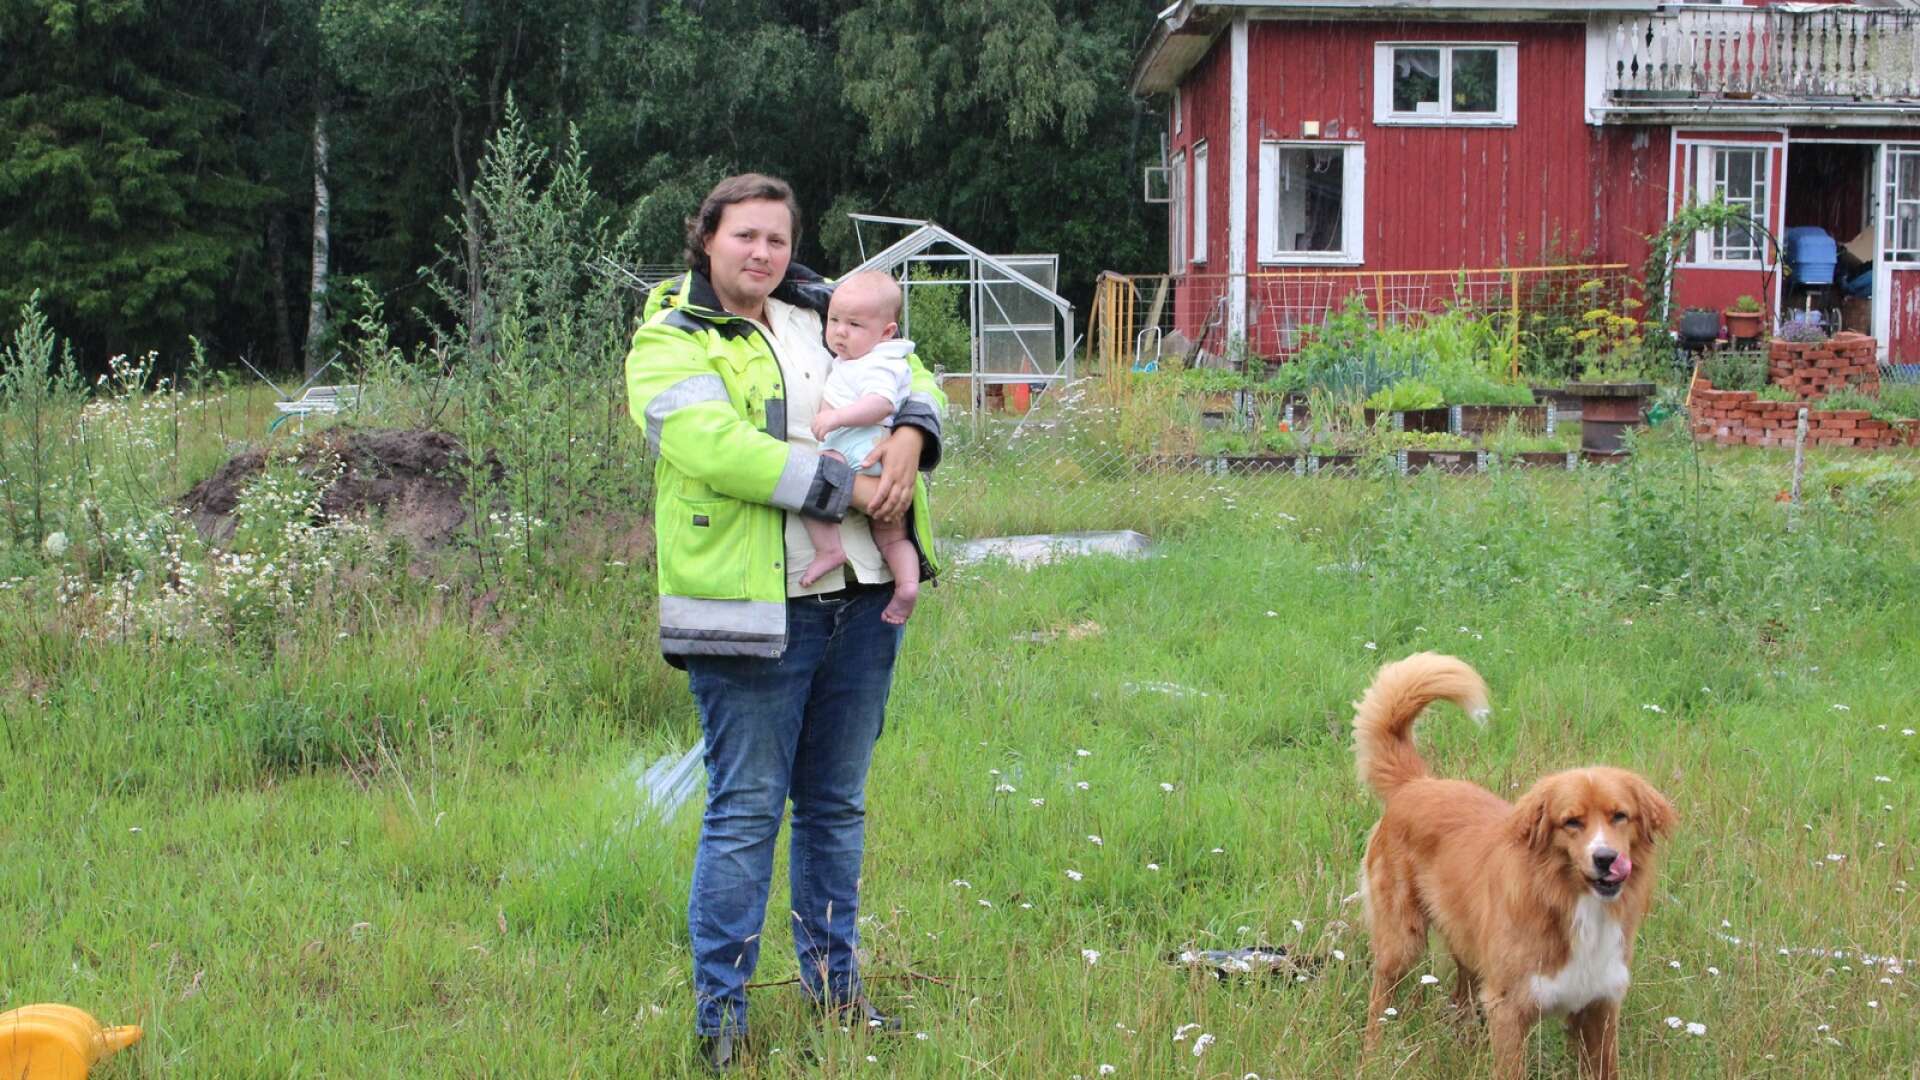 Cim Wennström bor med familjen på en gård utanför Vedum och vill odla mer av den egna maten i ett större växthus, men avgiften för bygglovet blev orimligt högt menar han.